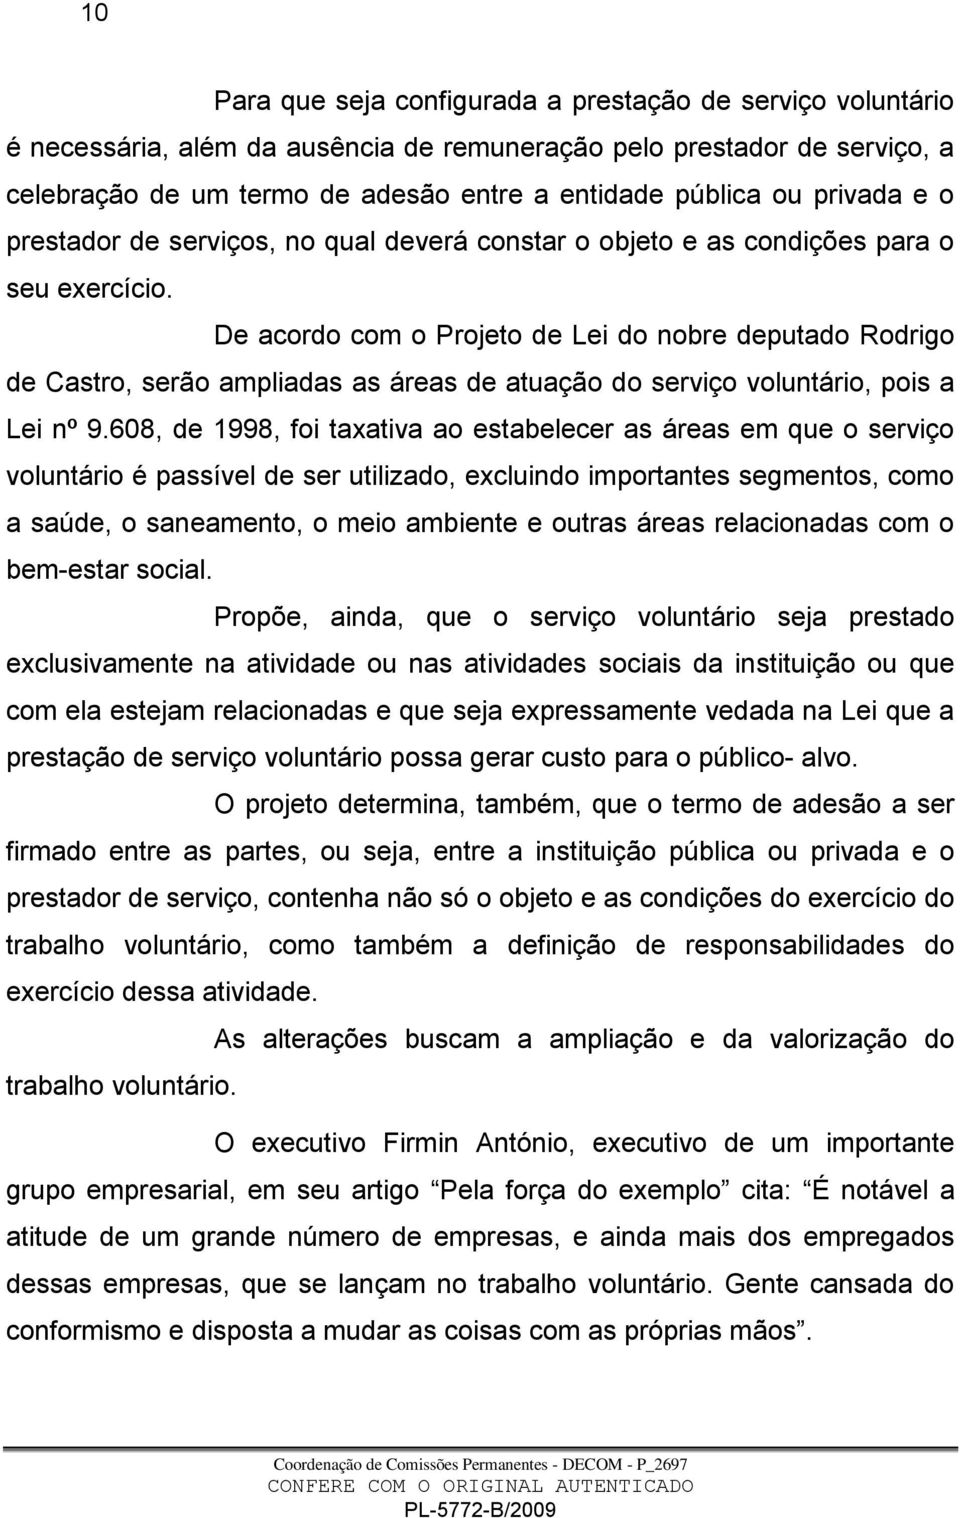 De acordo com o Projeto de Lei do nobre deputado Rodrigo de Castro, serão ampliadas as áreas de atuação do serviço voluntário, pois a Lei nº 9.